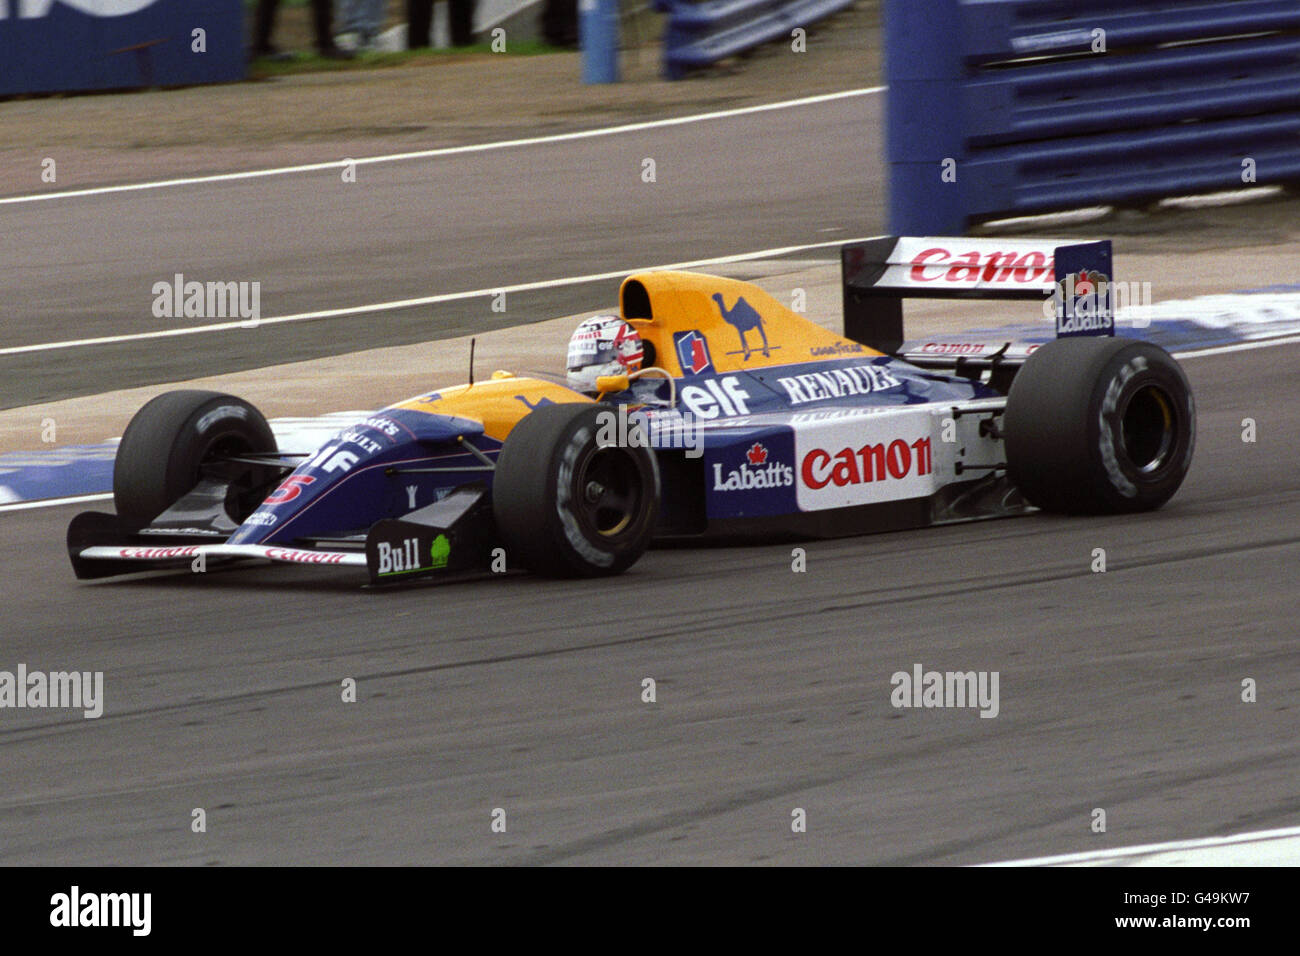 Nigel Mansell nella Williams-Renault sulla sua strada per vincere il Gran Premio di Gran Bretagna. Il Gran Bretagna Nigel Mansell ha segnato un Grand Chelem in gara (ha guidato ogni giro dalla pole position e ha stabilito il giro più veloce della gara) come parte della sua stagione vincente del Campionato di Formula uno 1992. Foto Stock